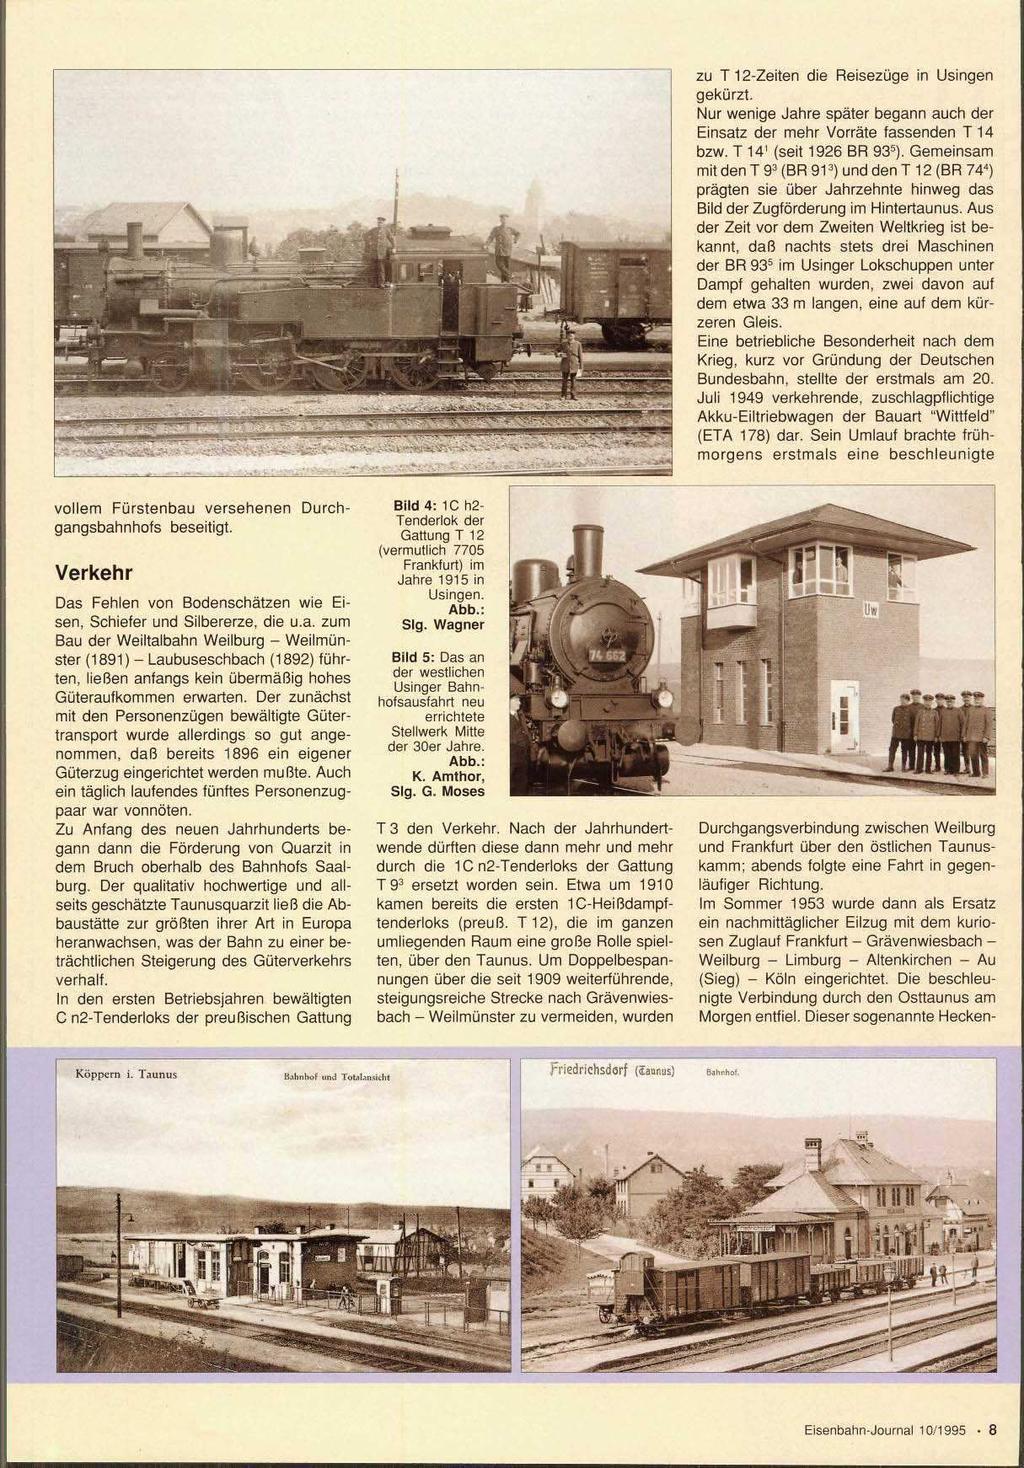 2 zu T 12-Zeiten die Reisezüge in Usingen gekürzt. Nur wenige Jahre später begann auch der Einsatz der mehr Vorräte fassenden T 14 bzw. T 14 (seit 1926 BR 935).